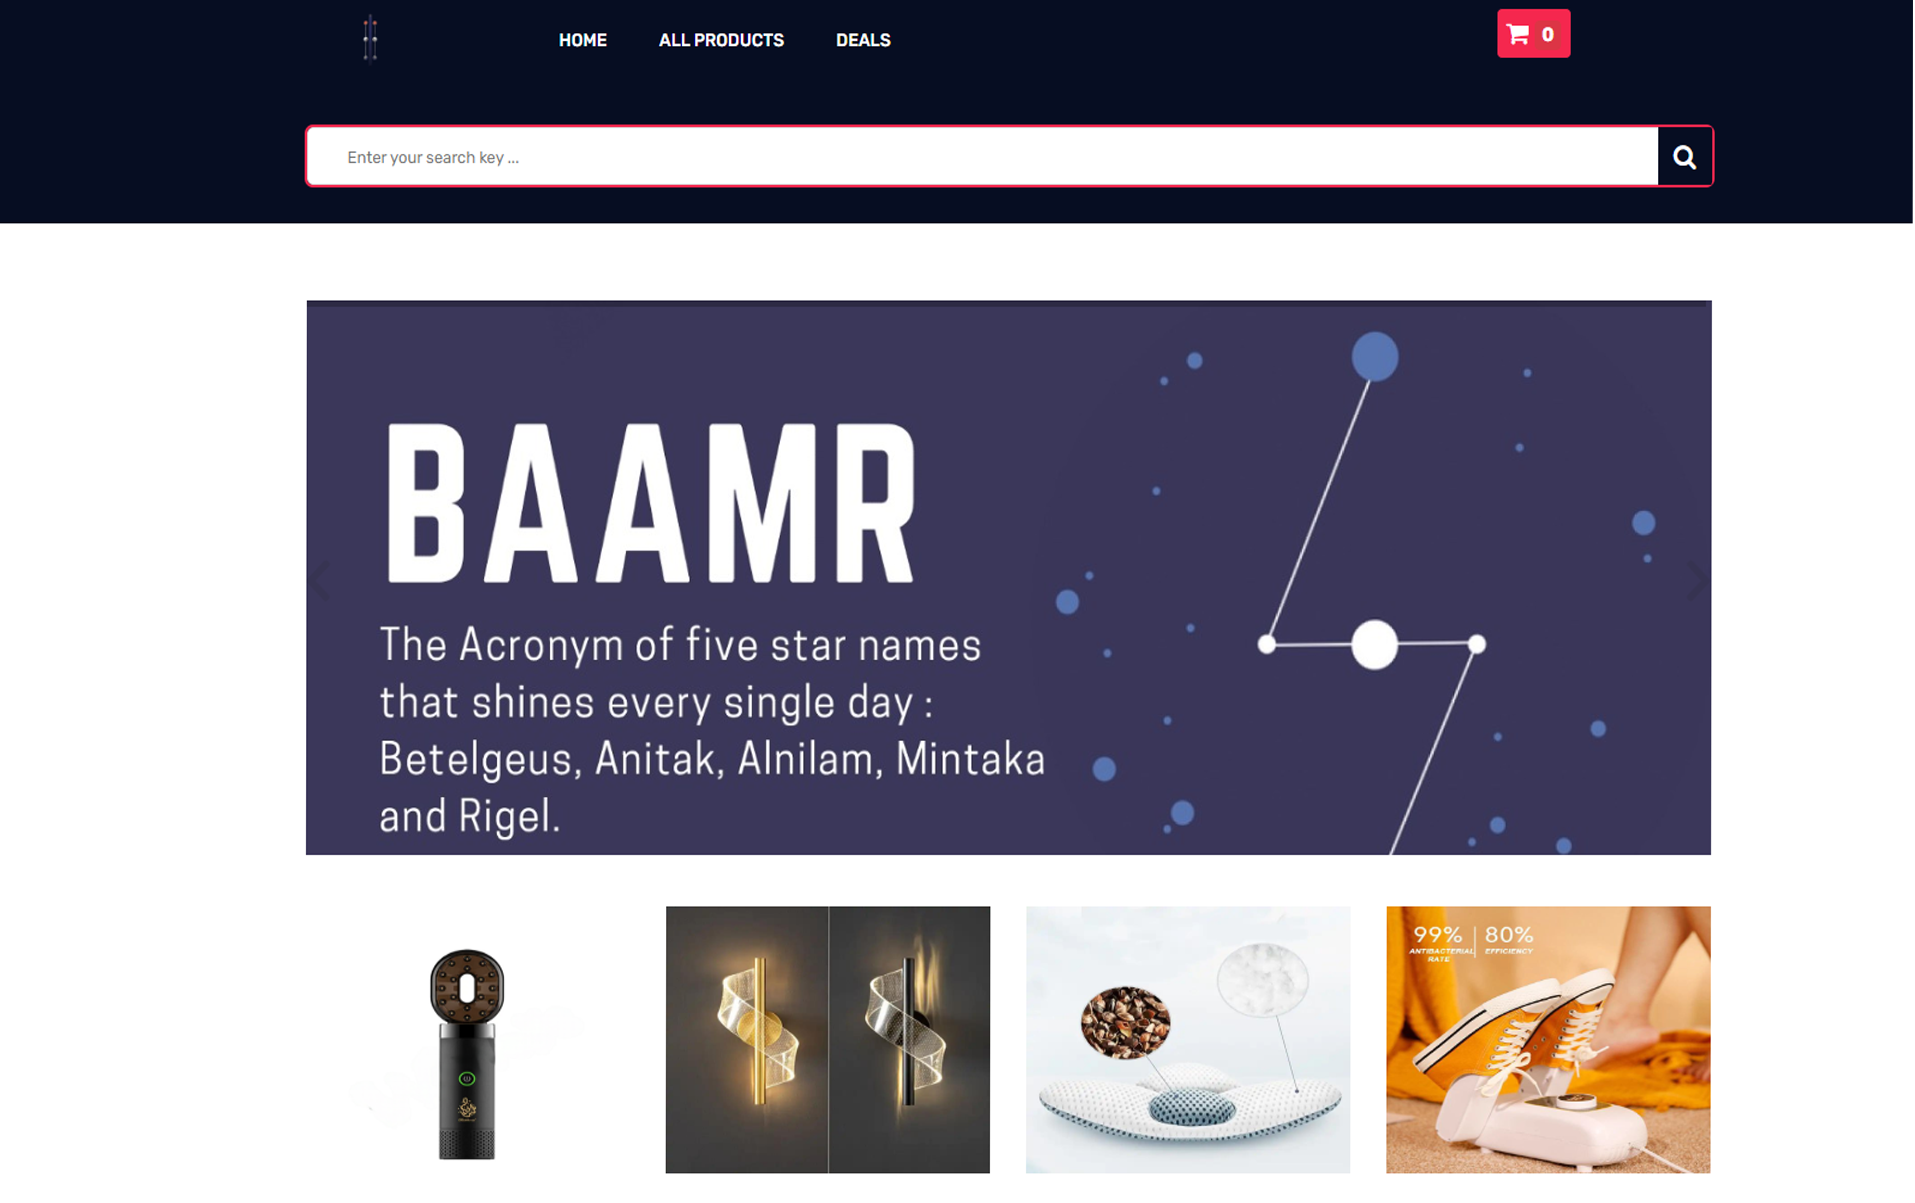 Baamr.com